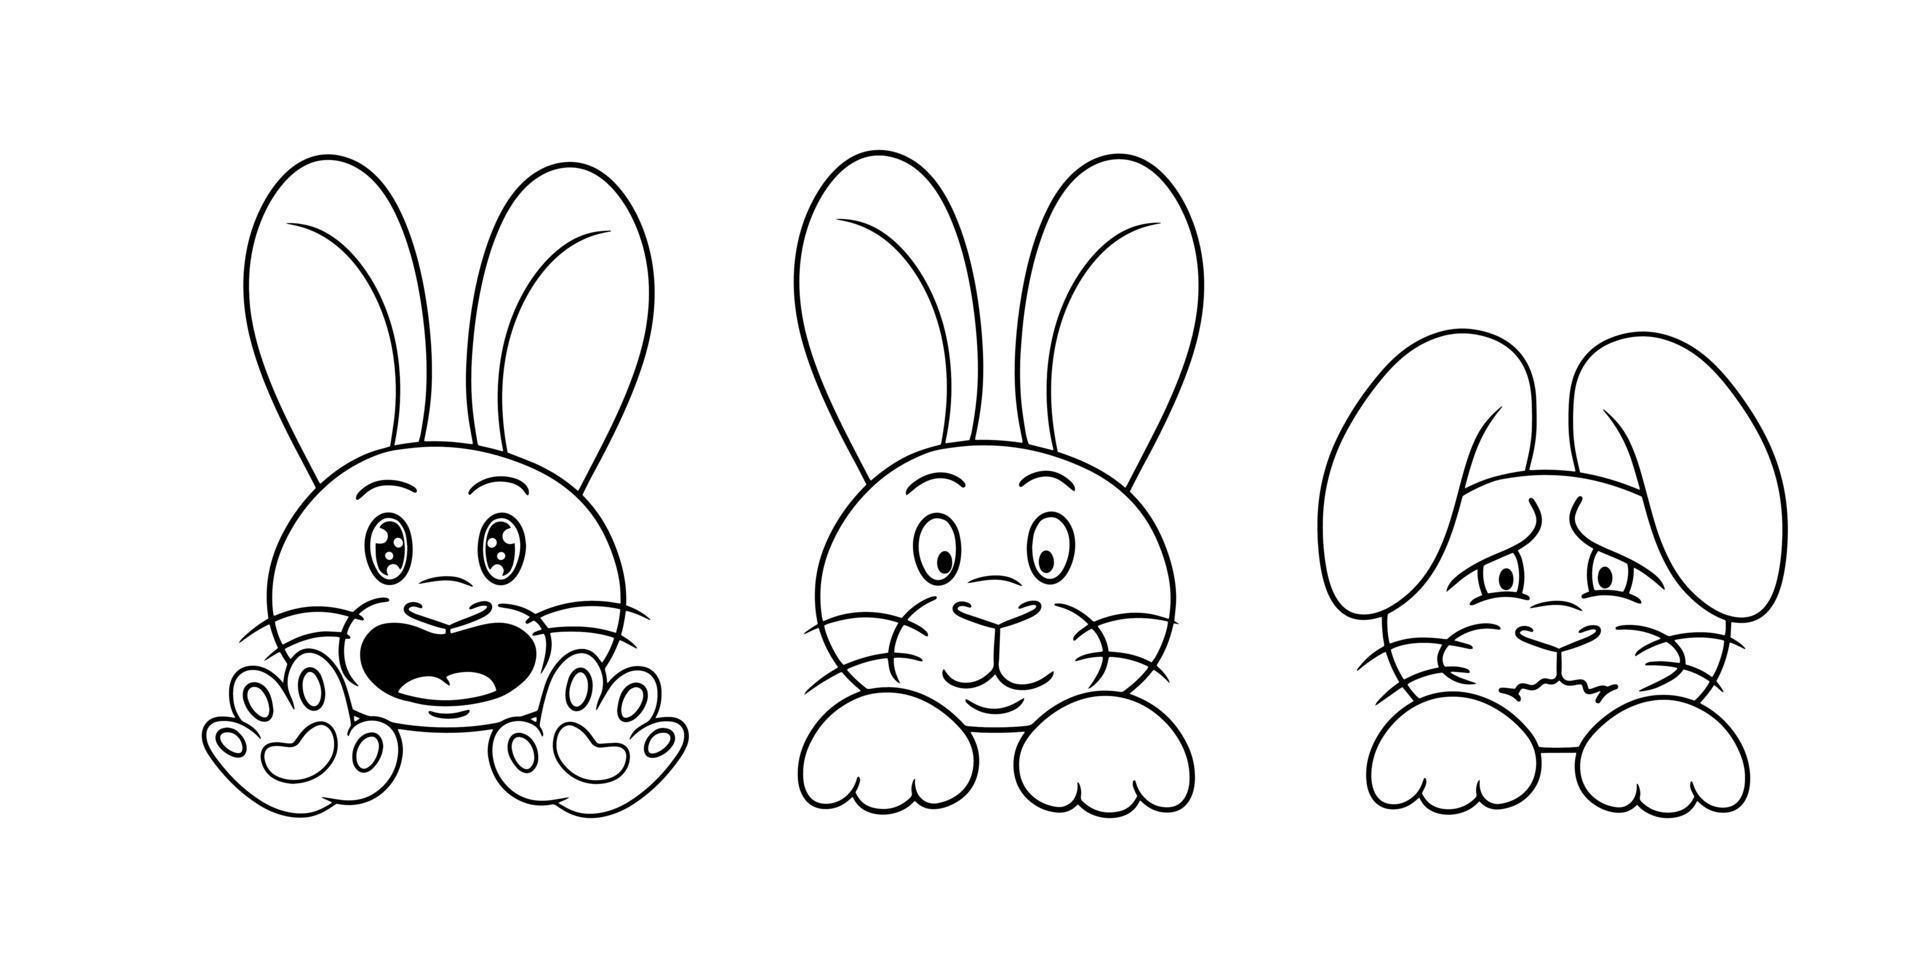 ensemble d'images monochromes, mignons petits lapins en style dessin animé, lapin offensé, lapins mignons moelleux. illustration vectorielle vecteur